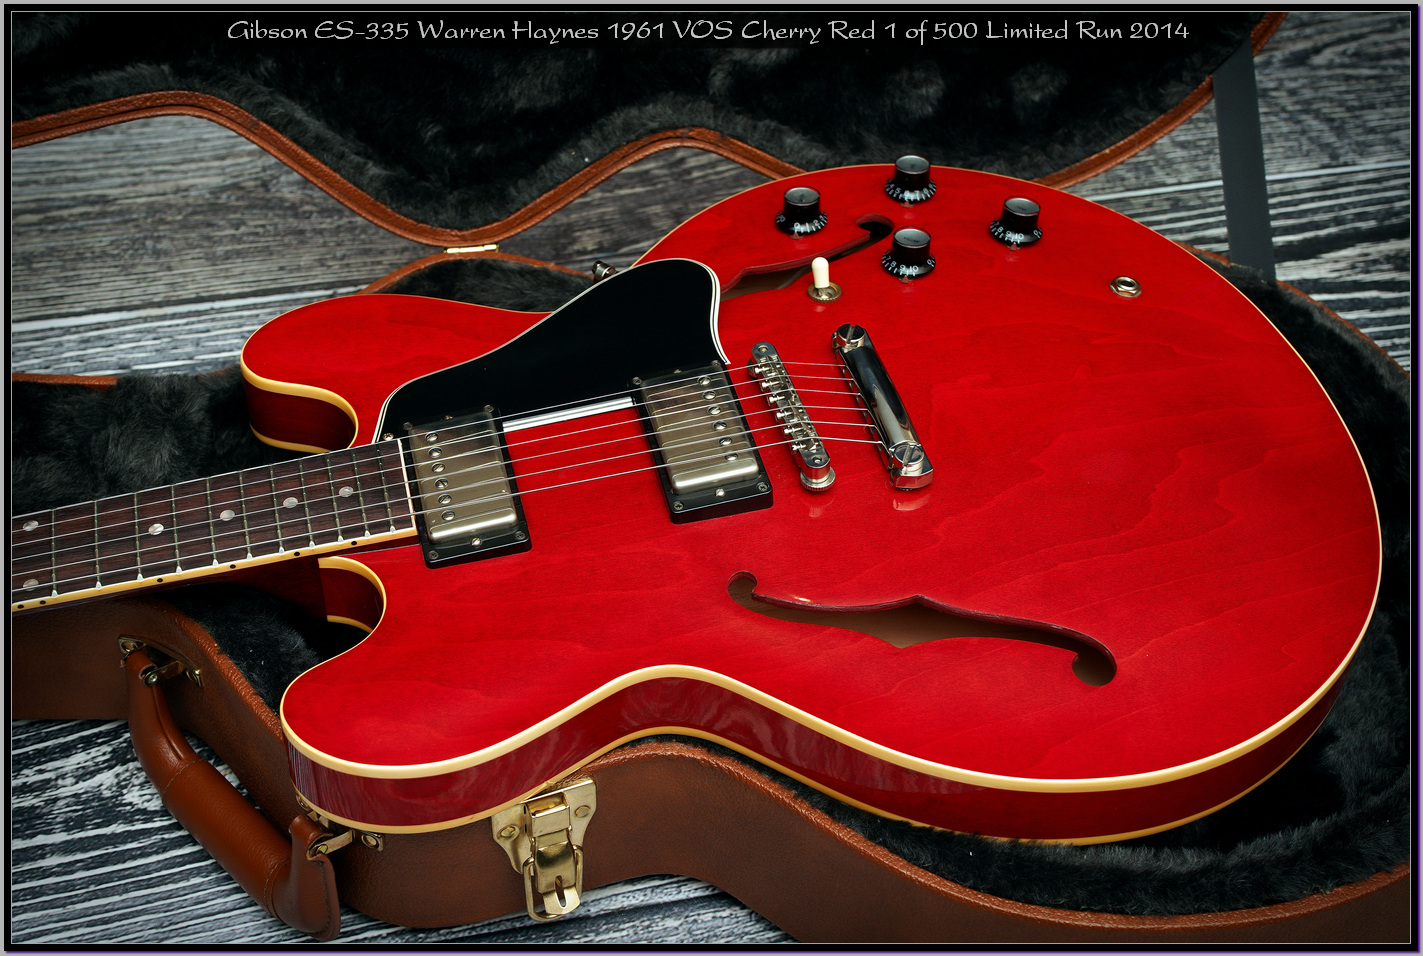 Gibson ES-335 Warren Haynes 1961 VOS Cherry Red 1 of 500 Limited Run 2014 12_x1440.jpg